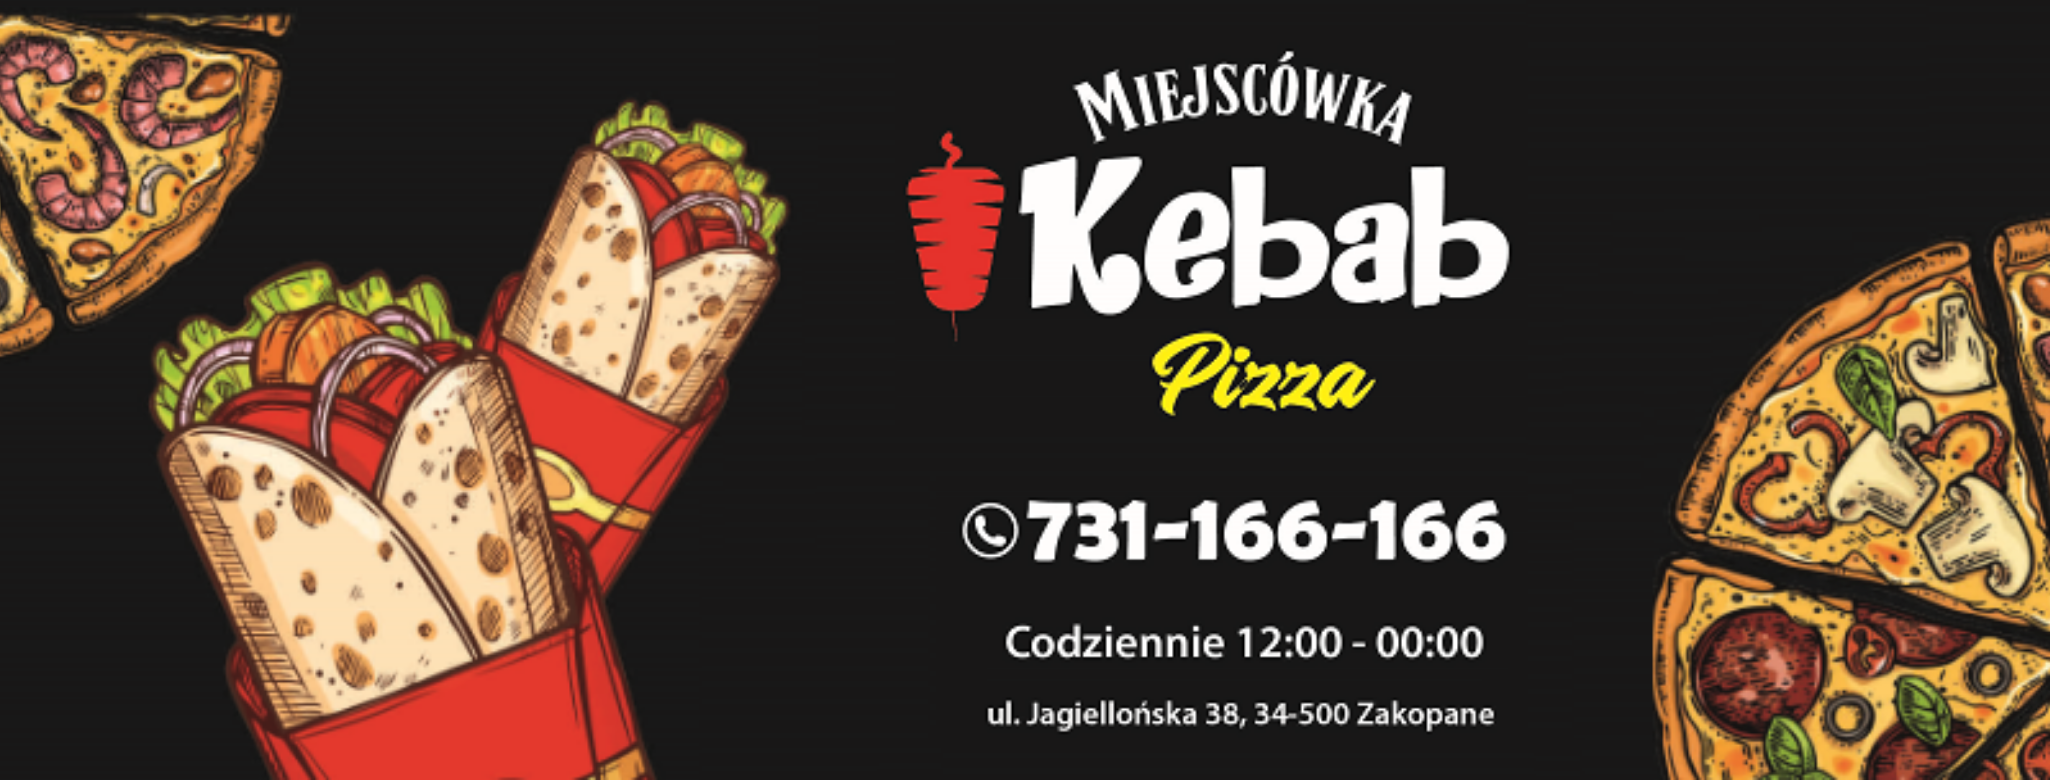 Miejscówka Kebab Pizza